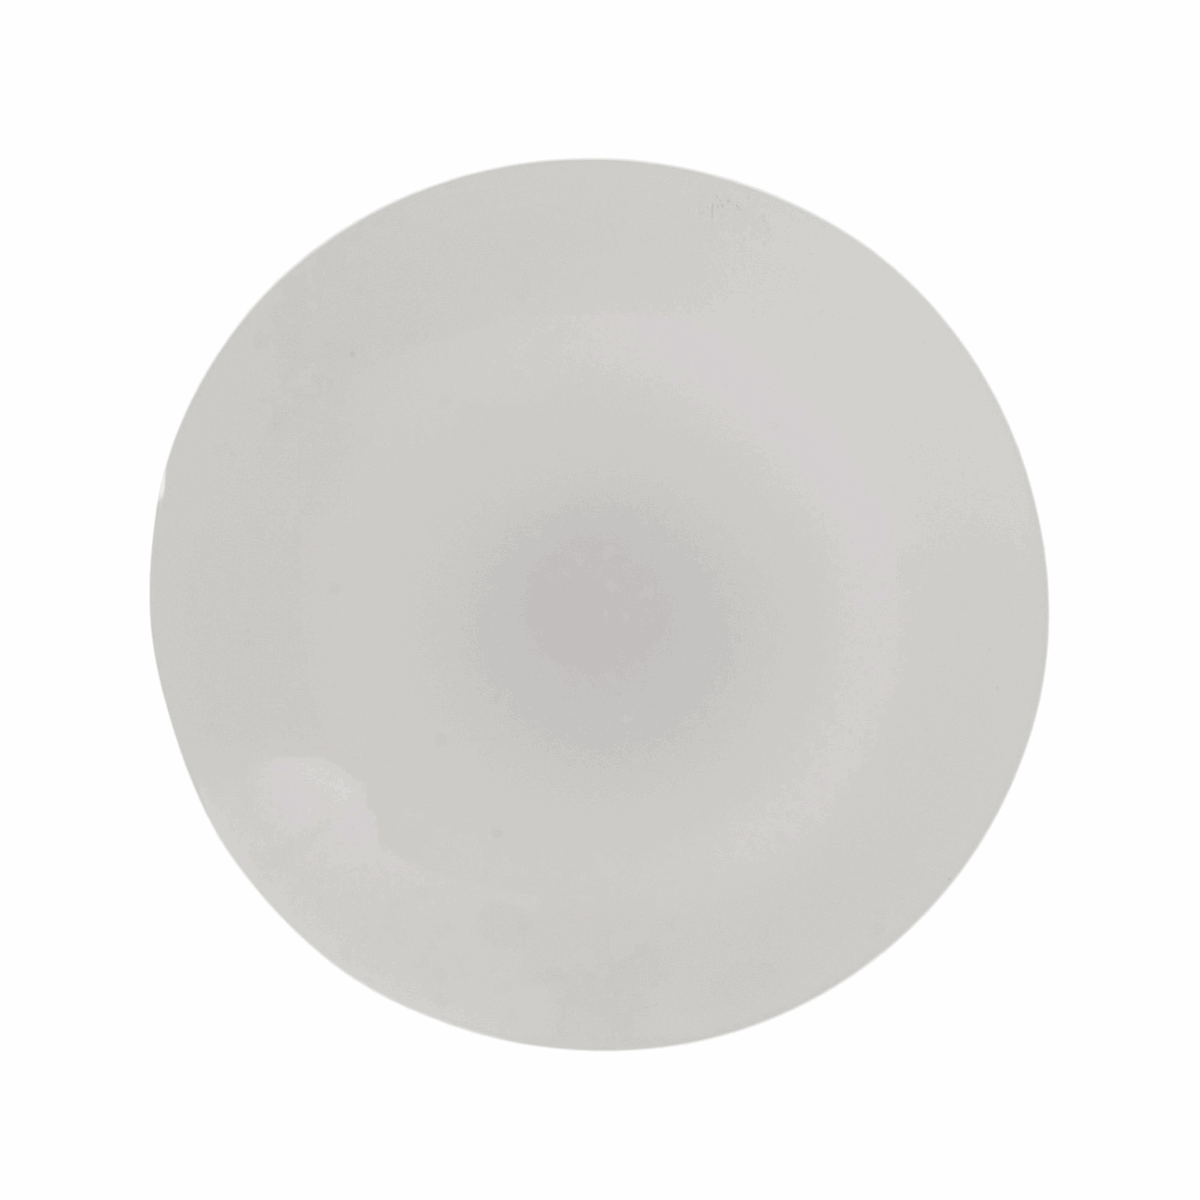 Hemline Round White Button - 13.75mm (Pack of 5)